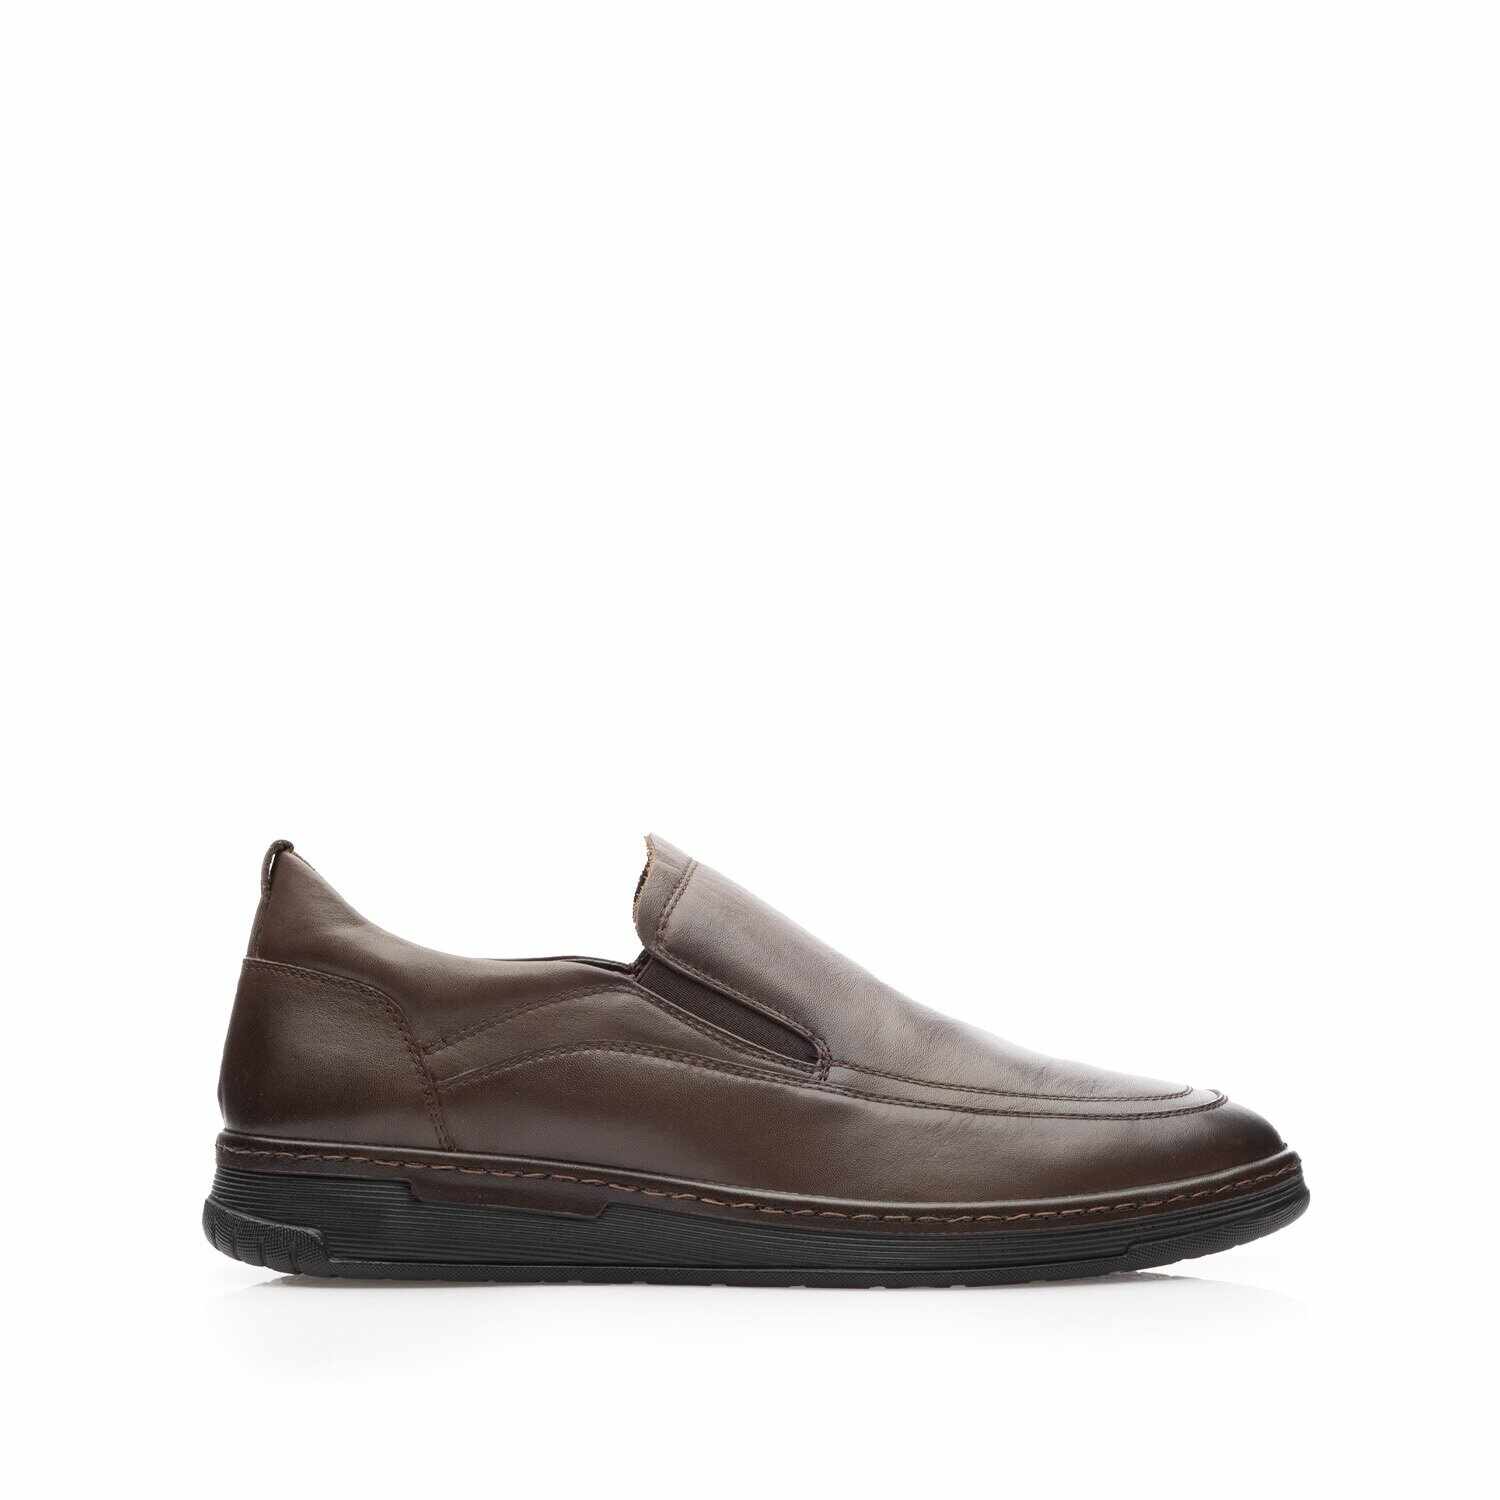 Pantofi casual bărbați din piele naturală, Leofex - 973 Maro Box